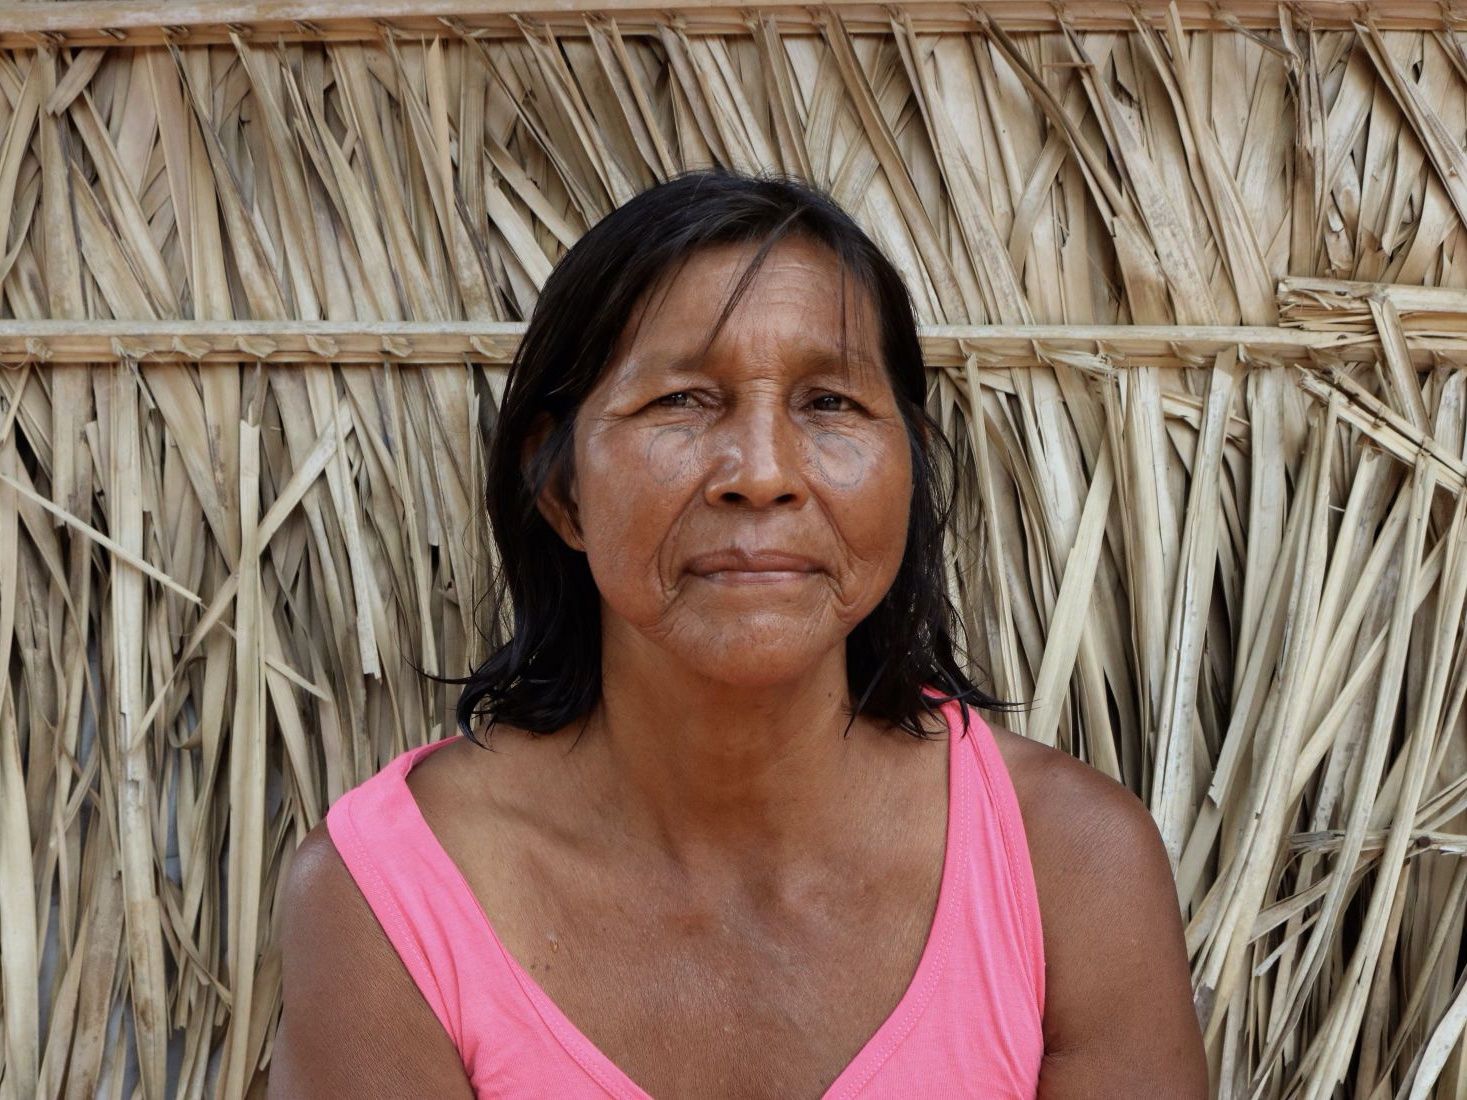 Longas distâncias e idioma dificultam denúncias de violência doméstica por mulheres indígenas